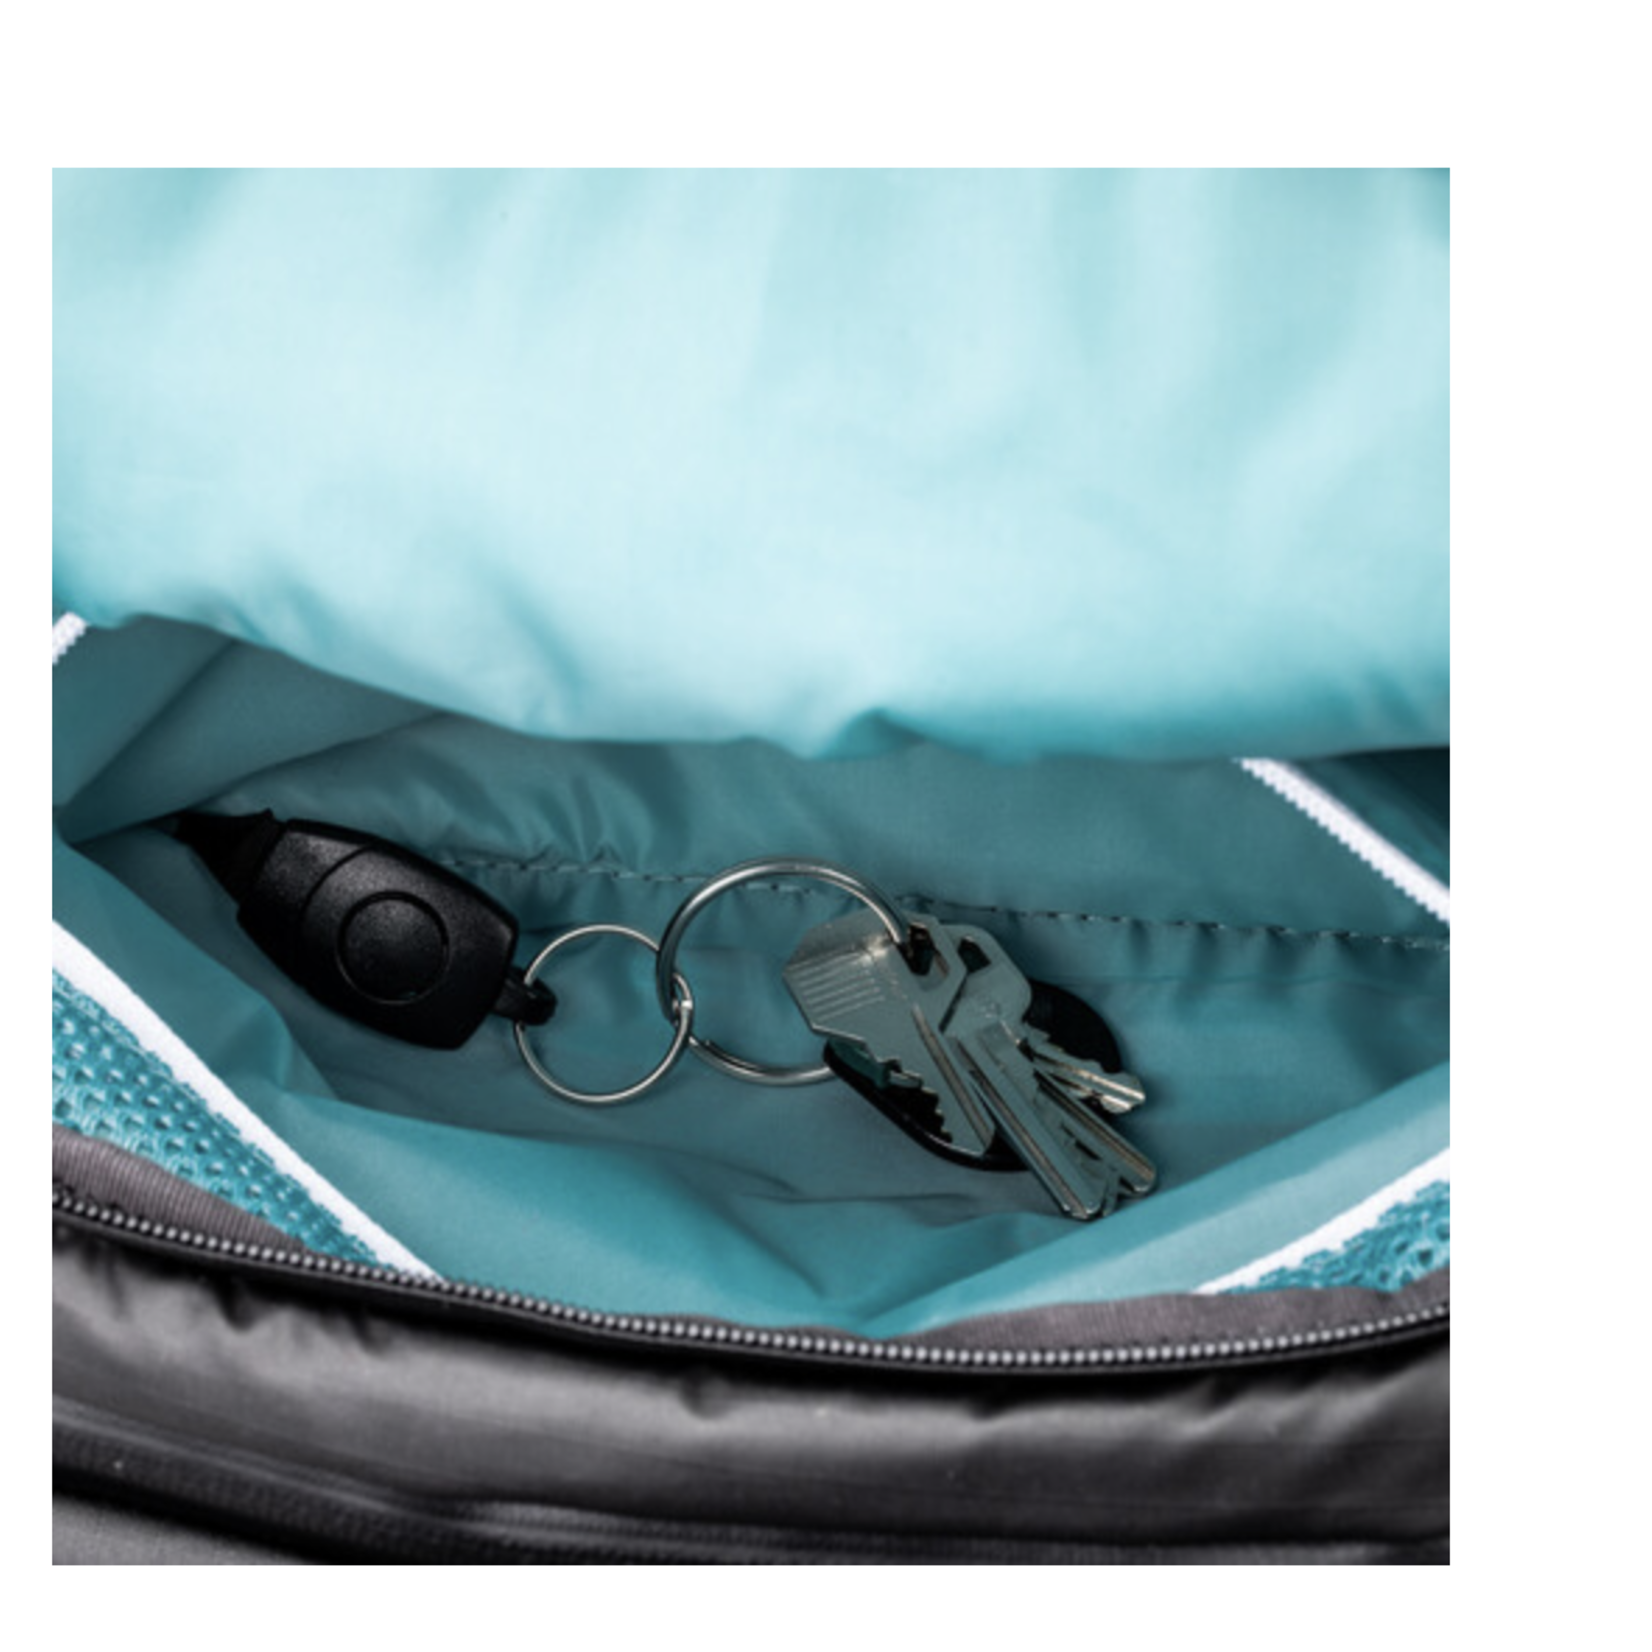 Shimoda Shimoda Designs Explore v2 35 Backpack Photo Starter Kit (Black)